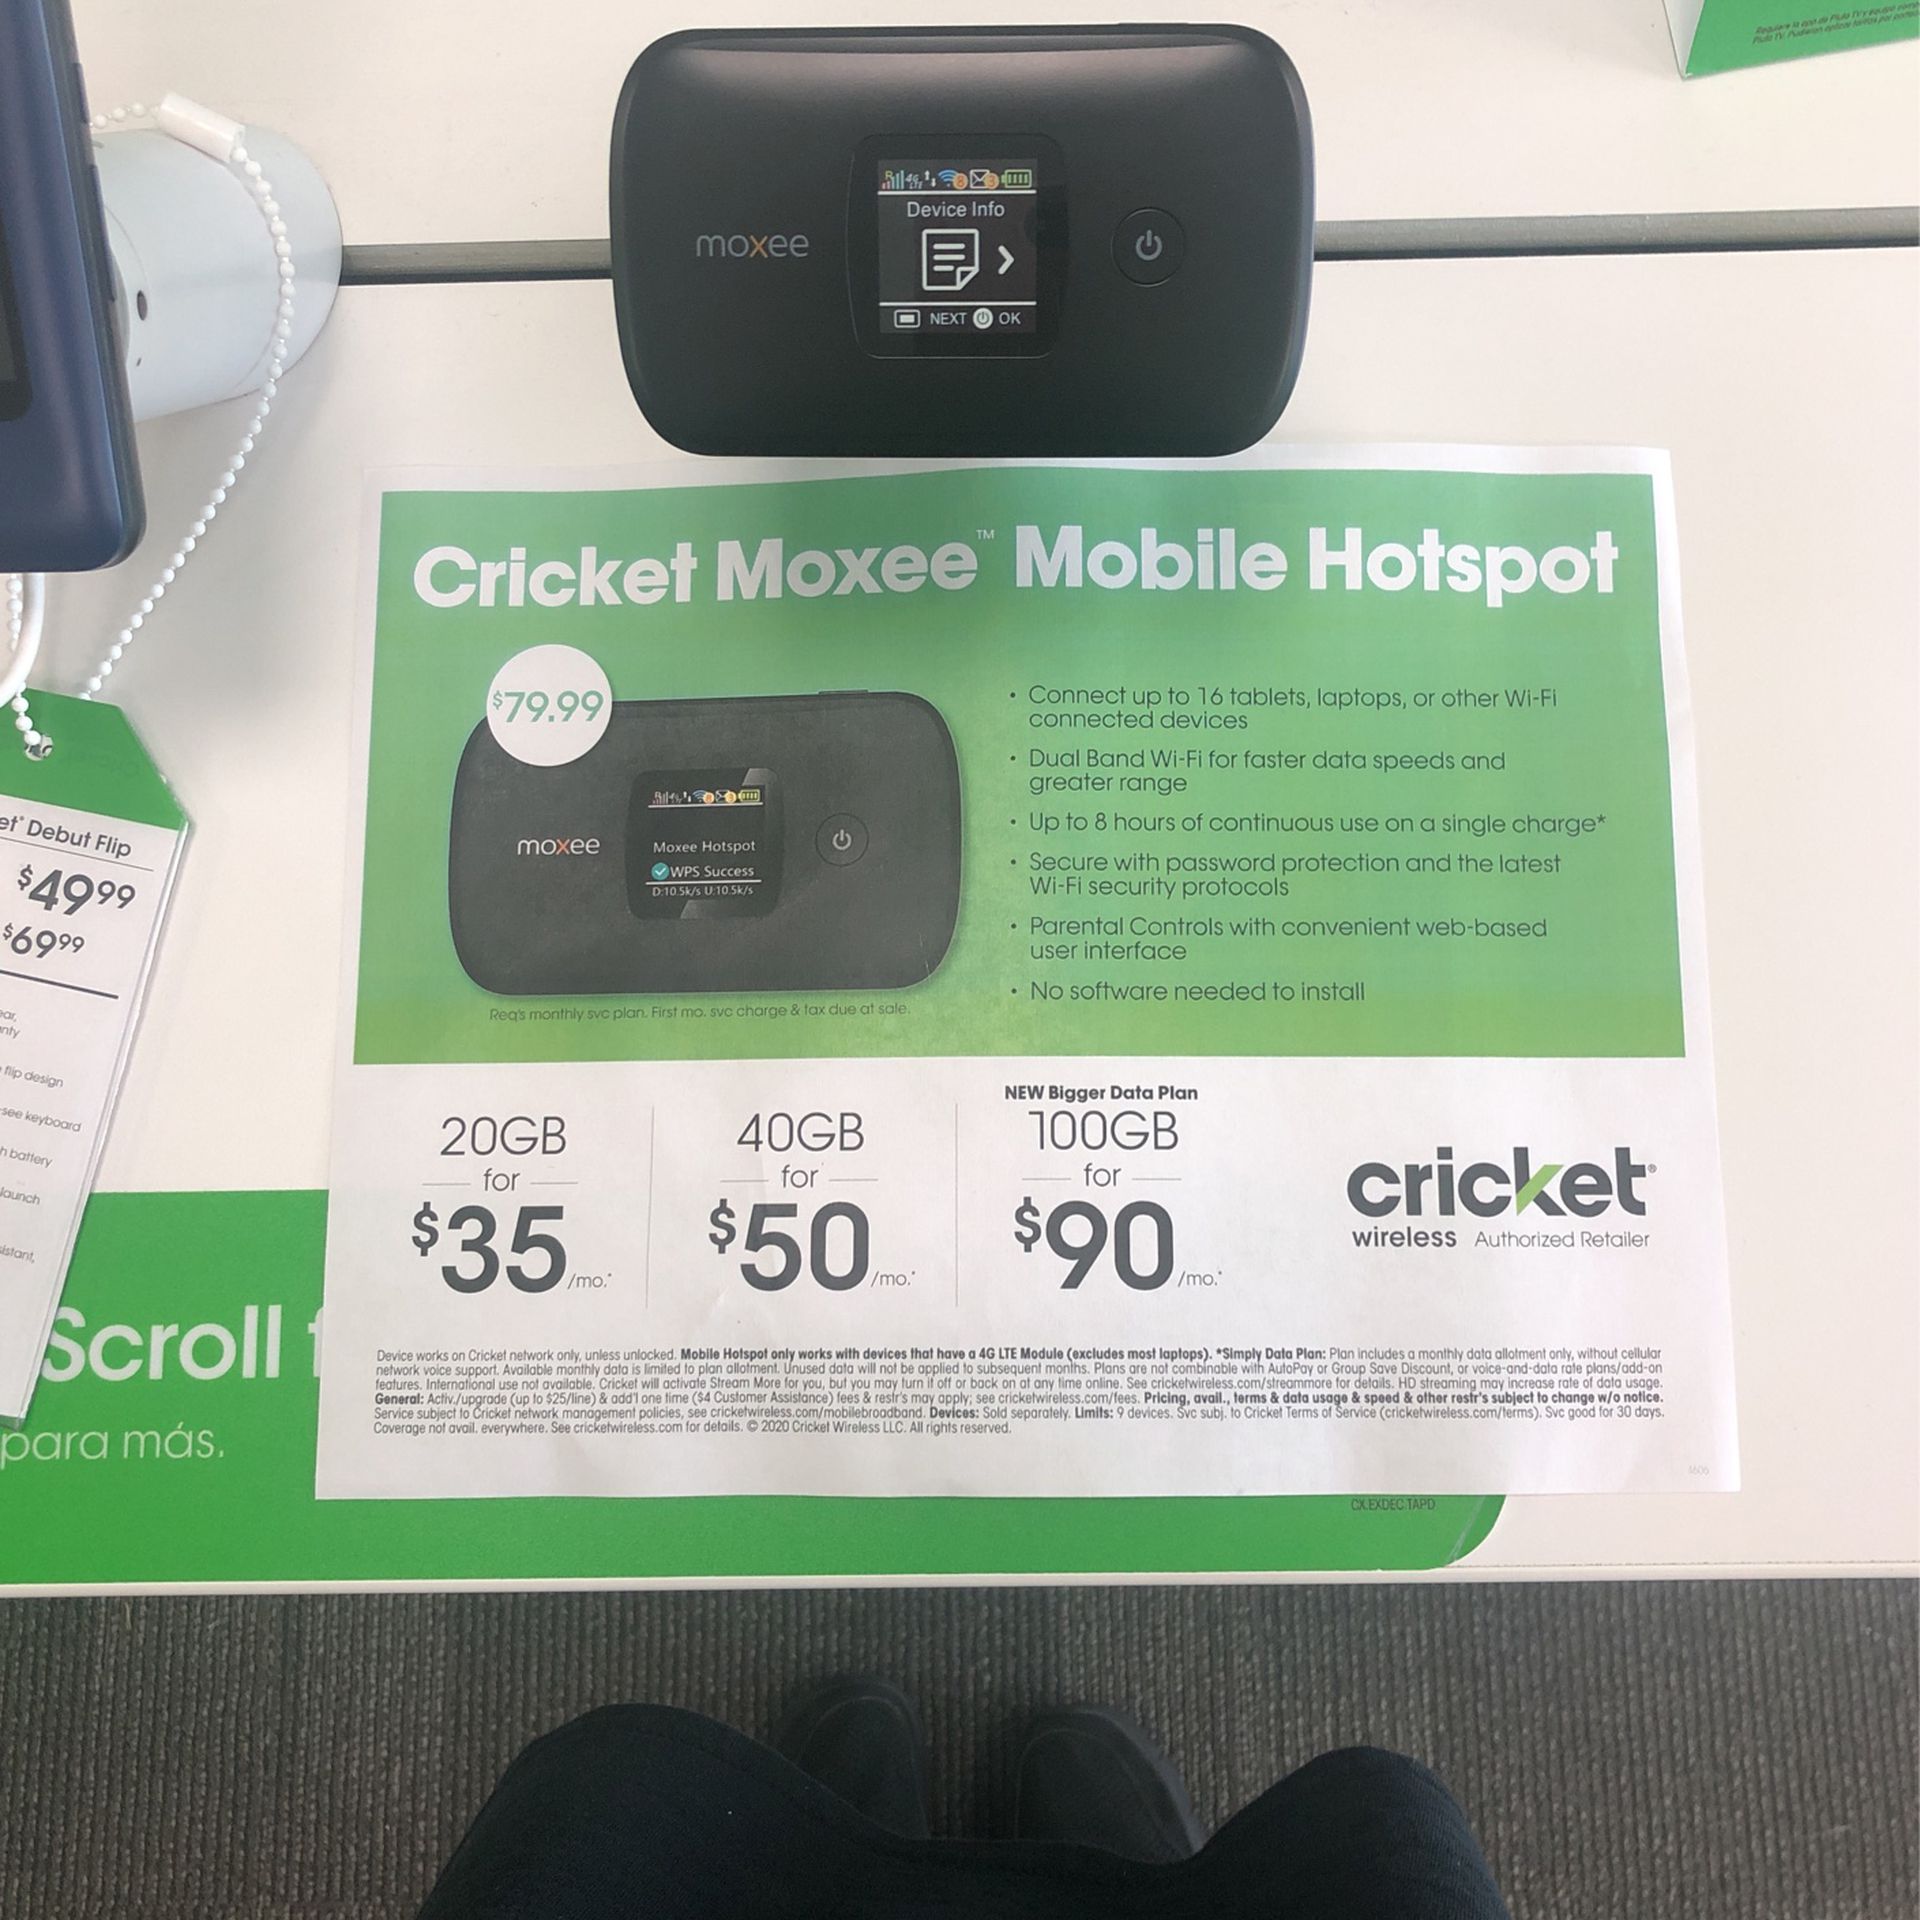 Cricket Moxee Mobile Hotspot